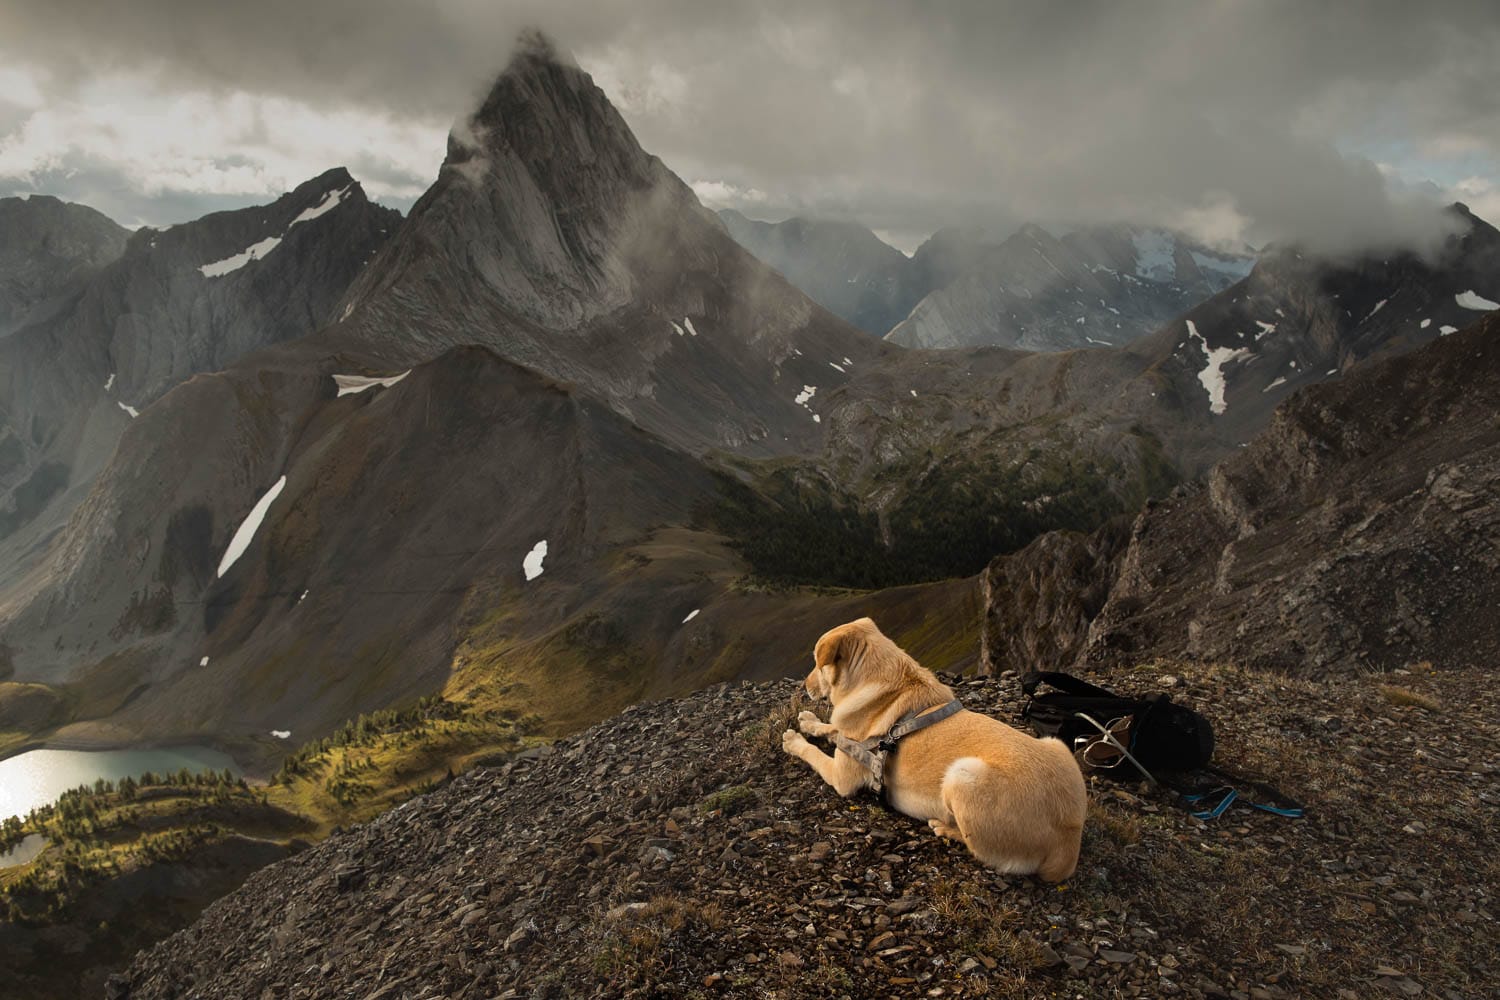 Dog on Mountain